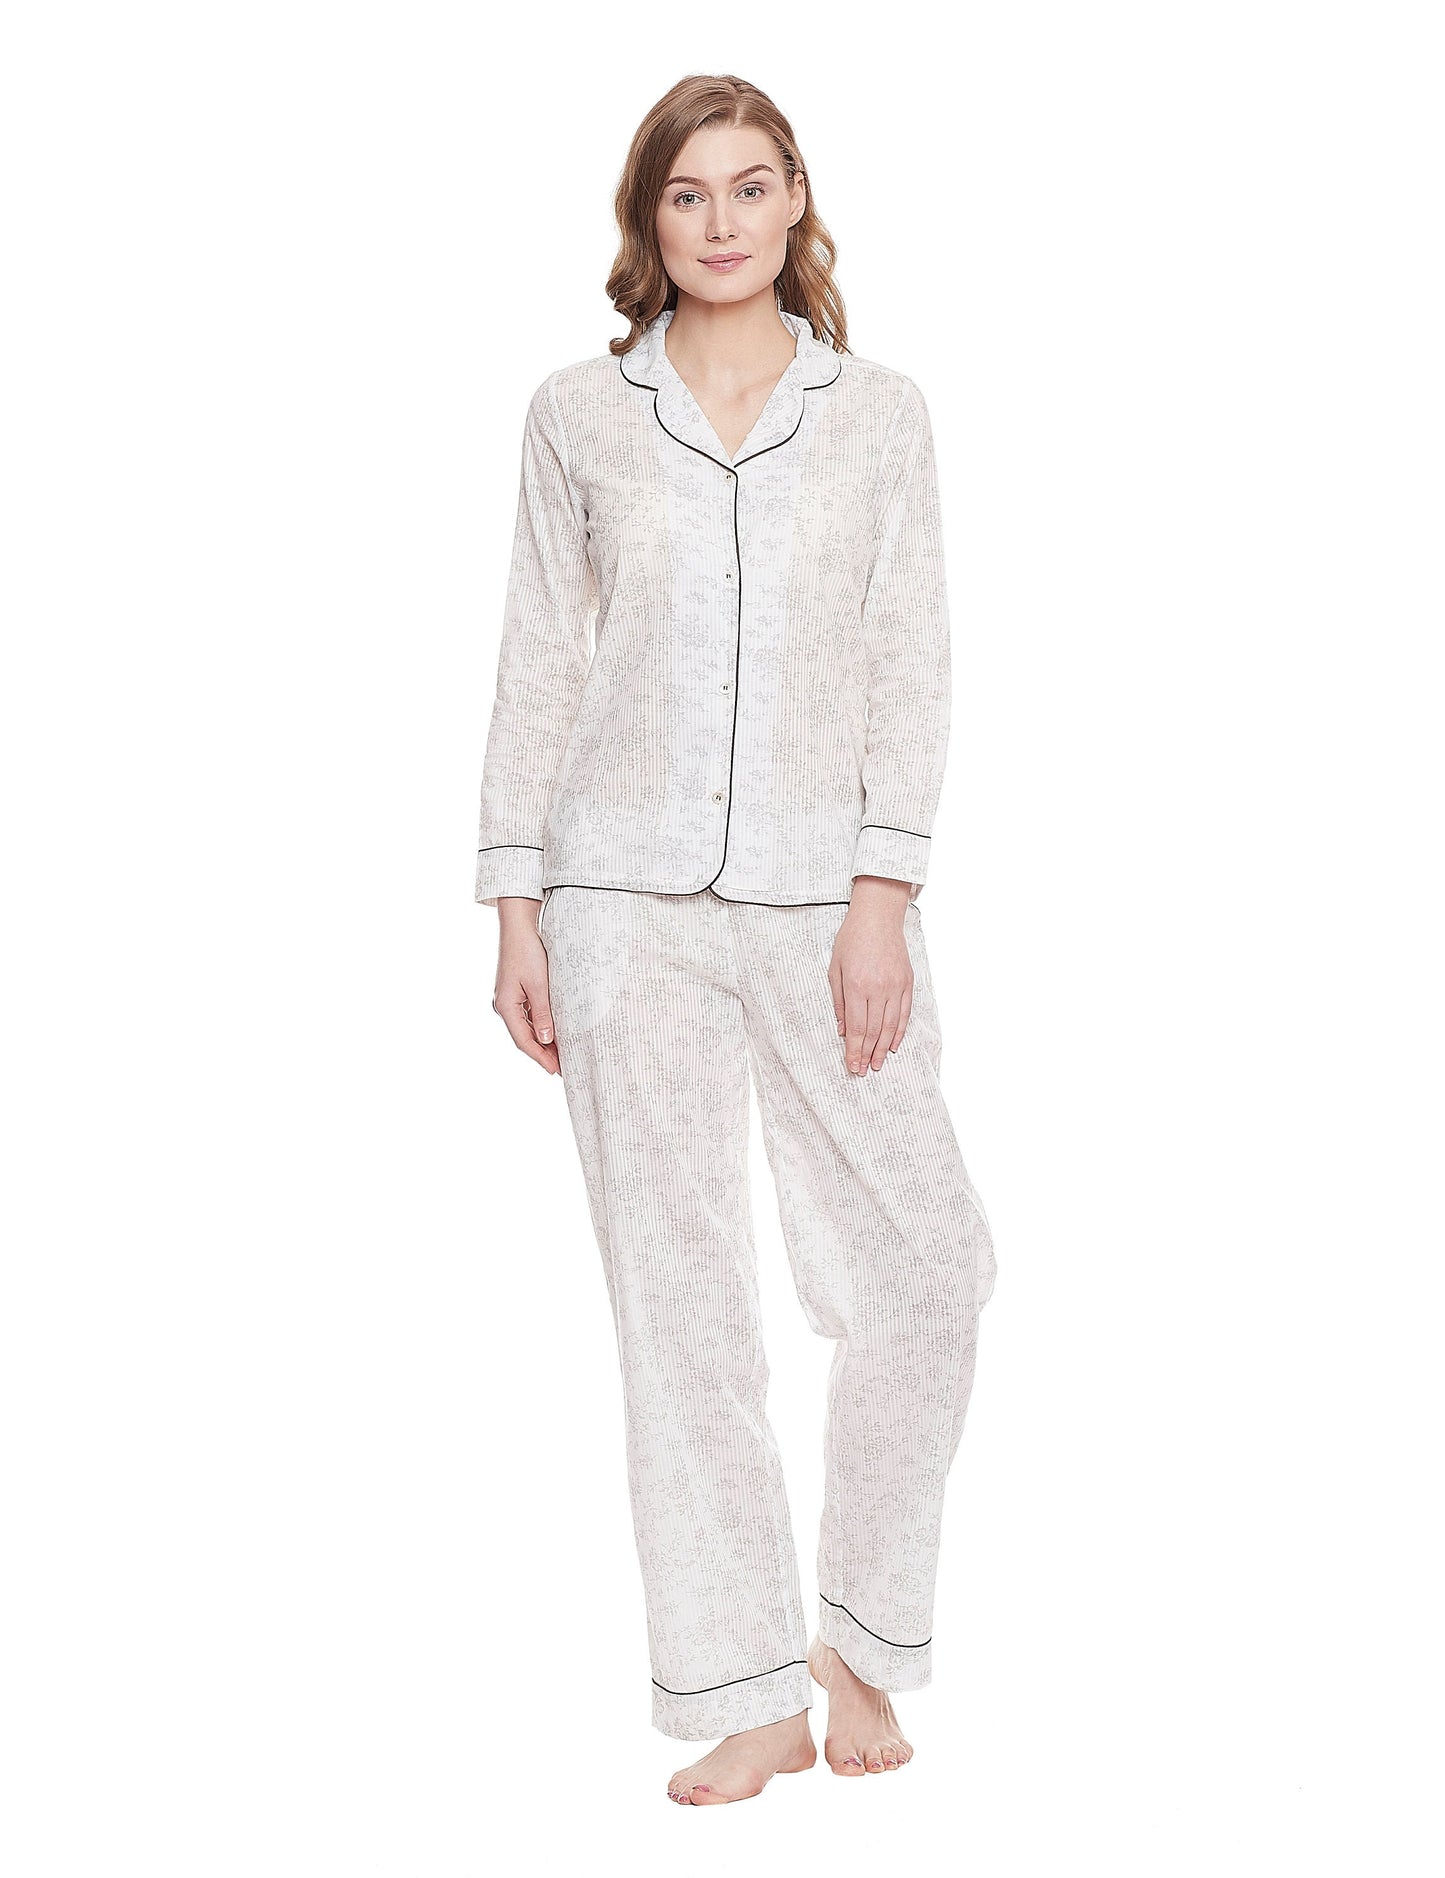 Jennie Cotton Woven Printed Pajama Set Pajamas 45.00 Indigo Paisley